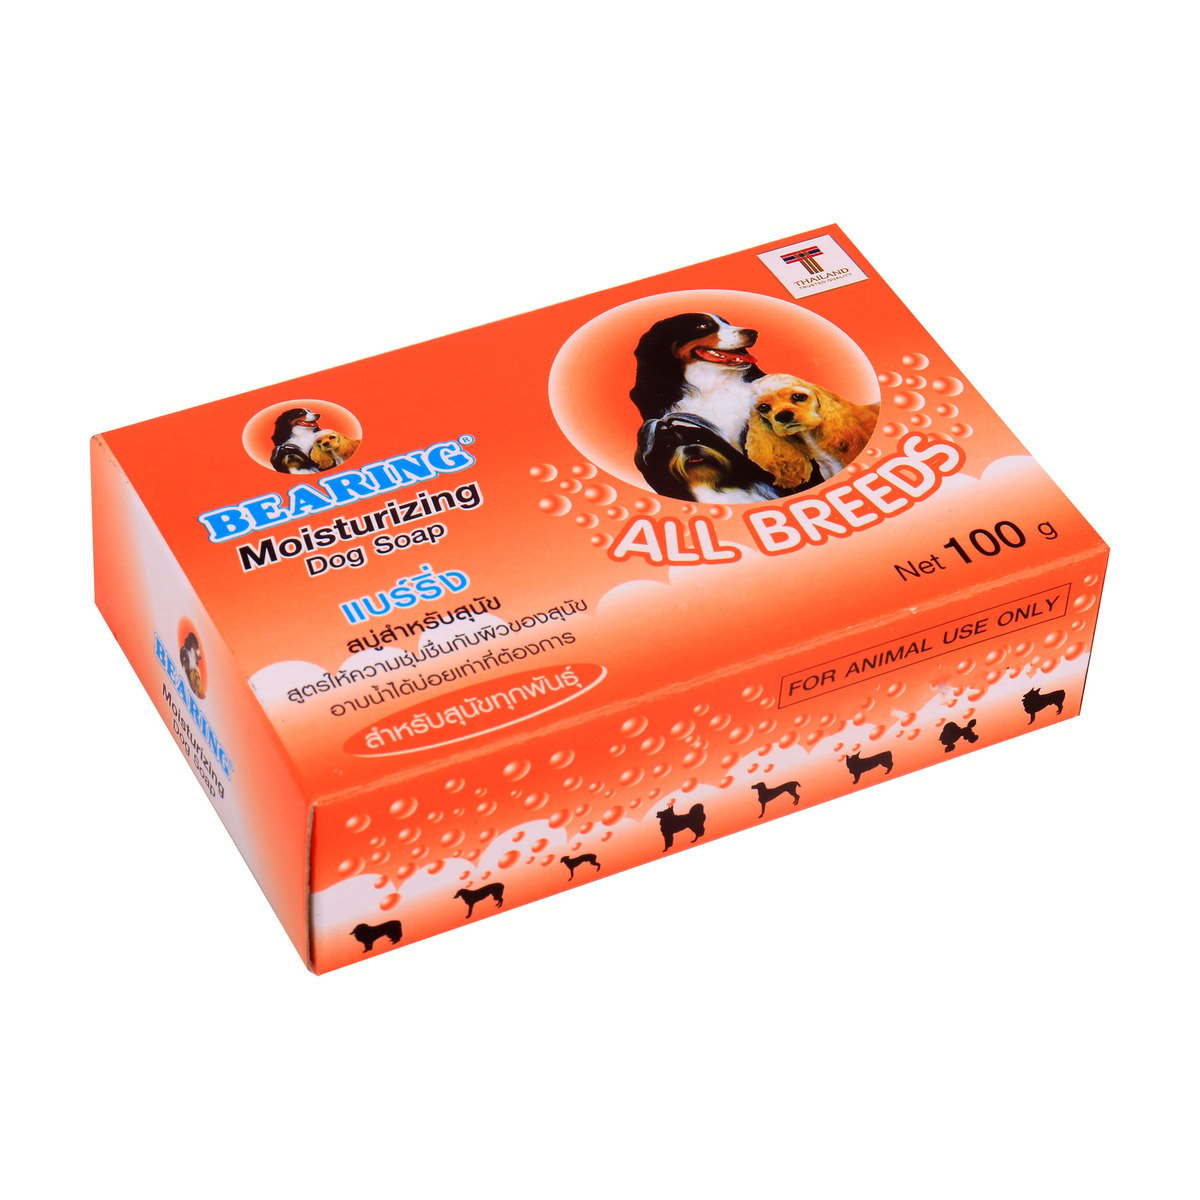 Bearing Dog Soap Moisturizing, 100 g